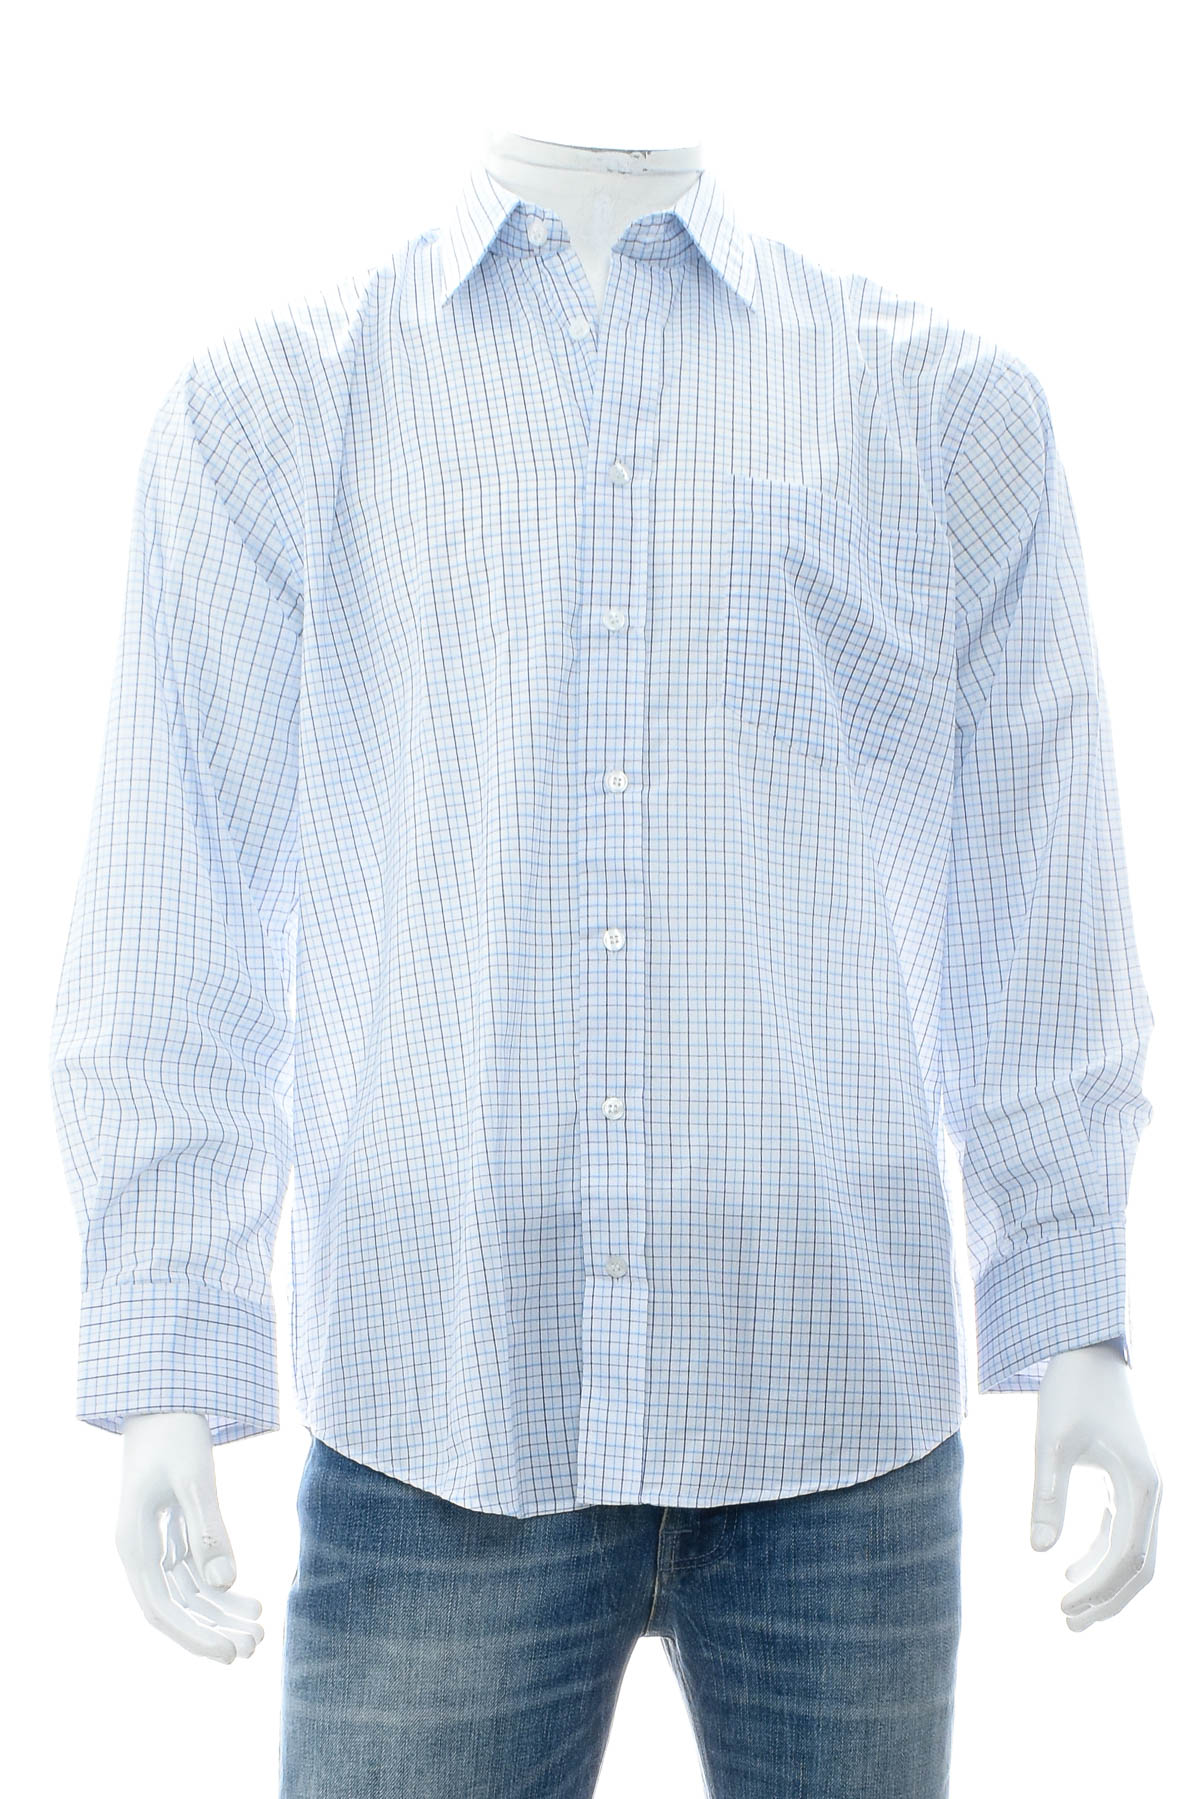 Ανδρικό πουκάμισο - Saruccia - 0